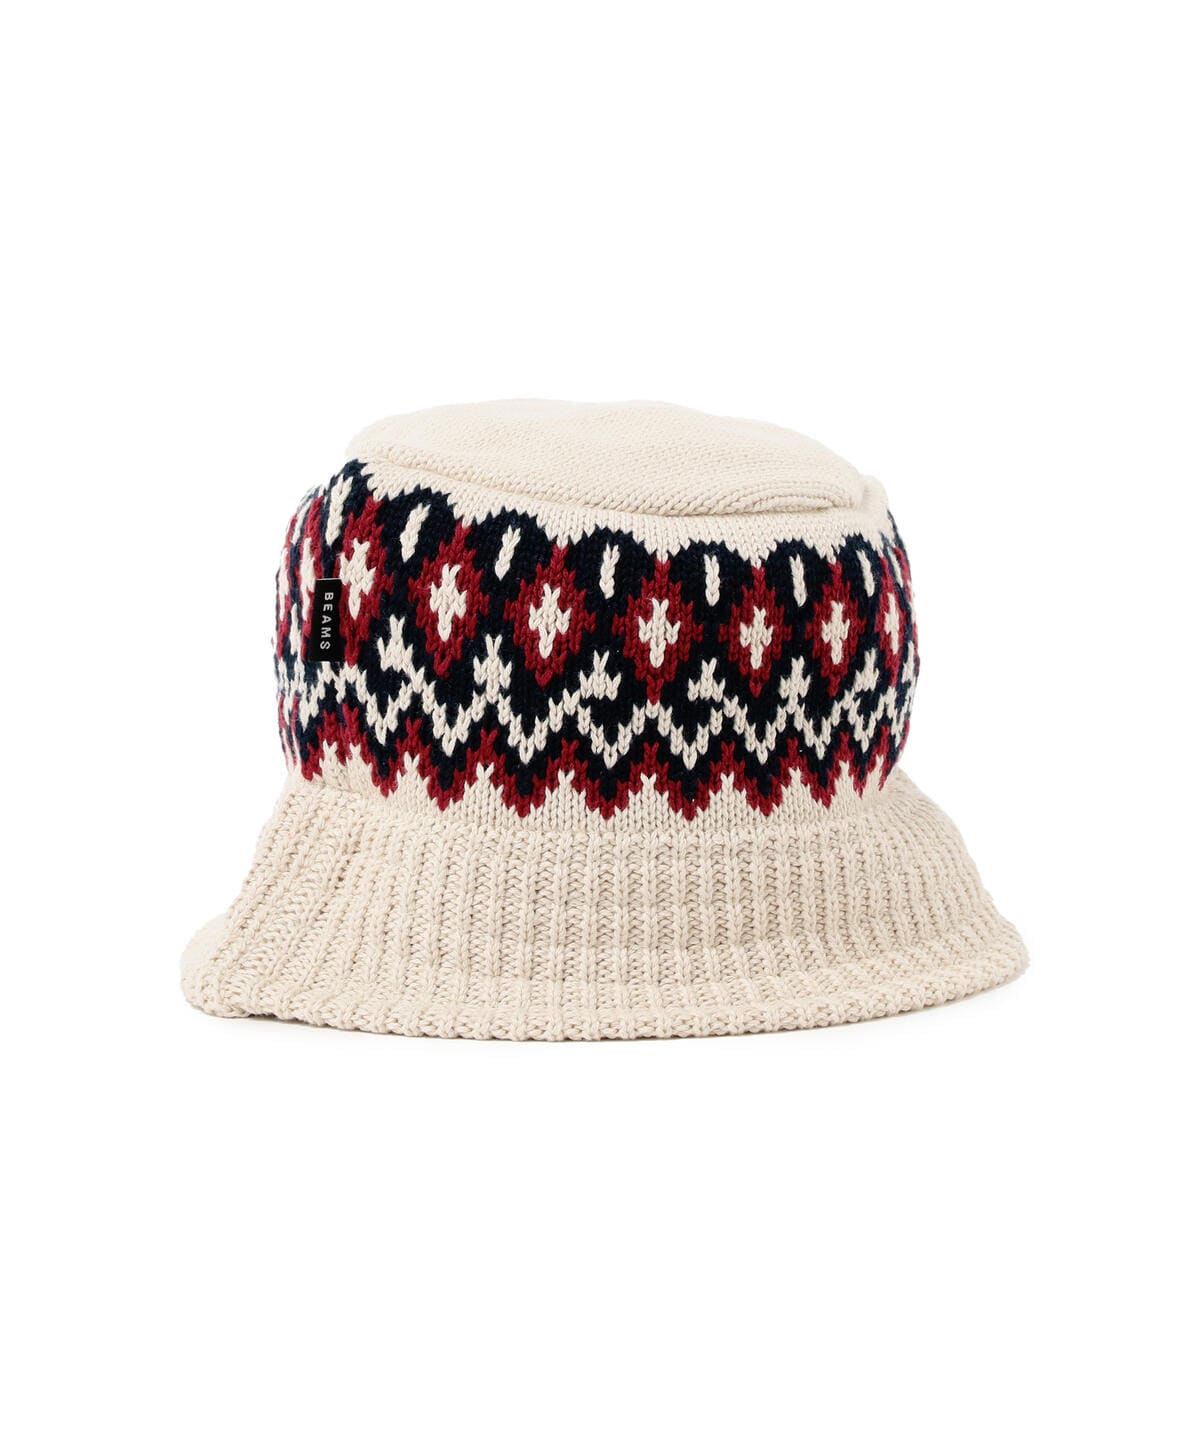 BEAMS BEAMS Jacquard knit BEAMS hat (hat) mail order | BEAMS